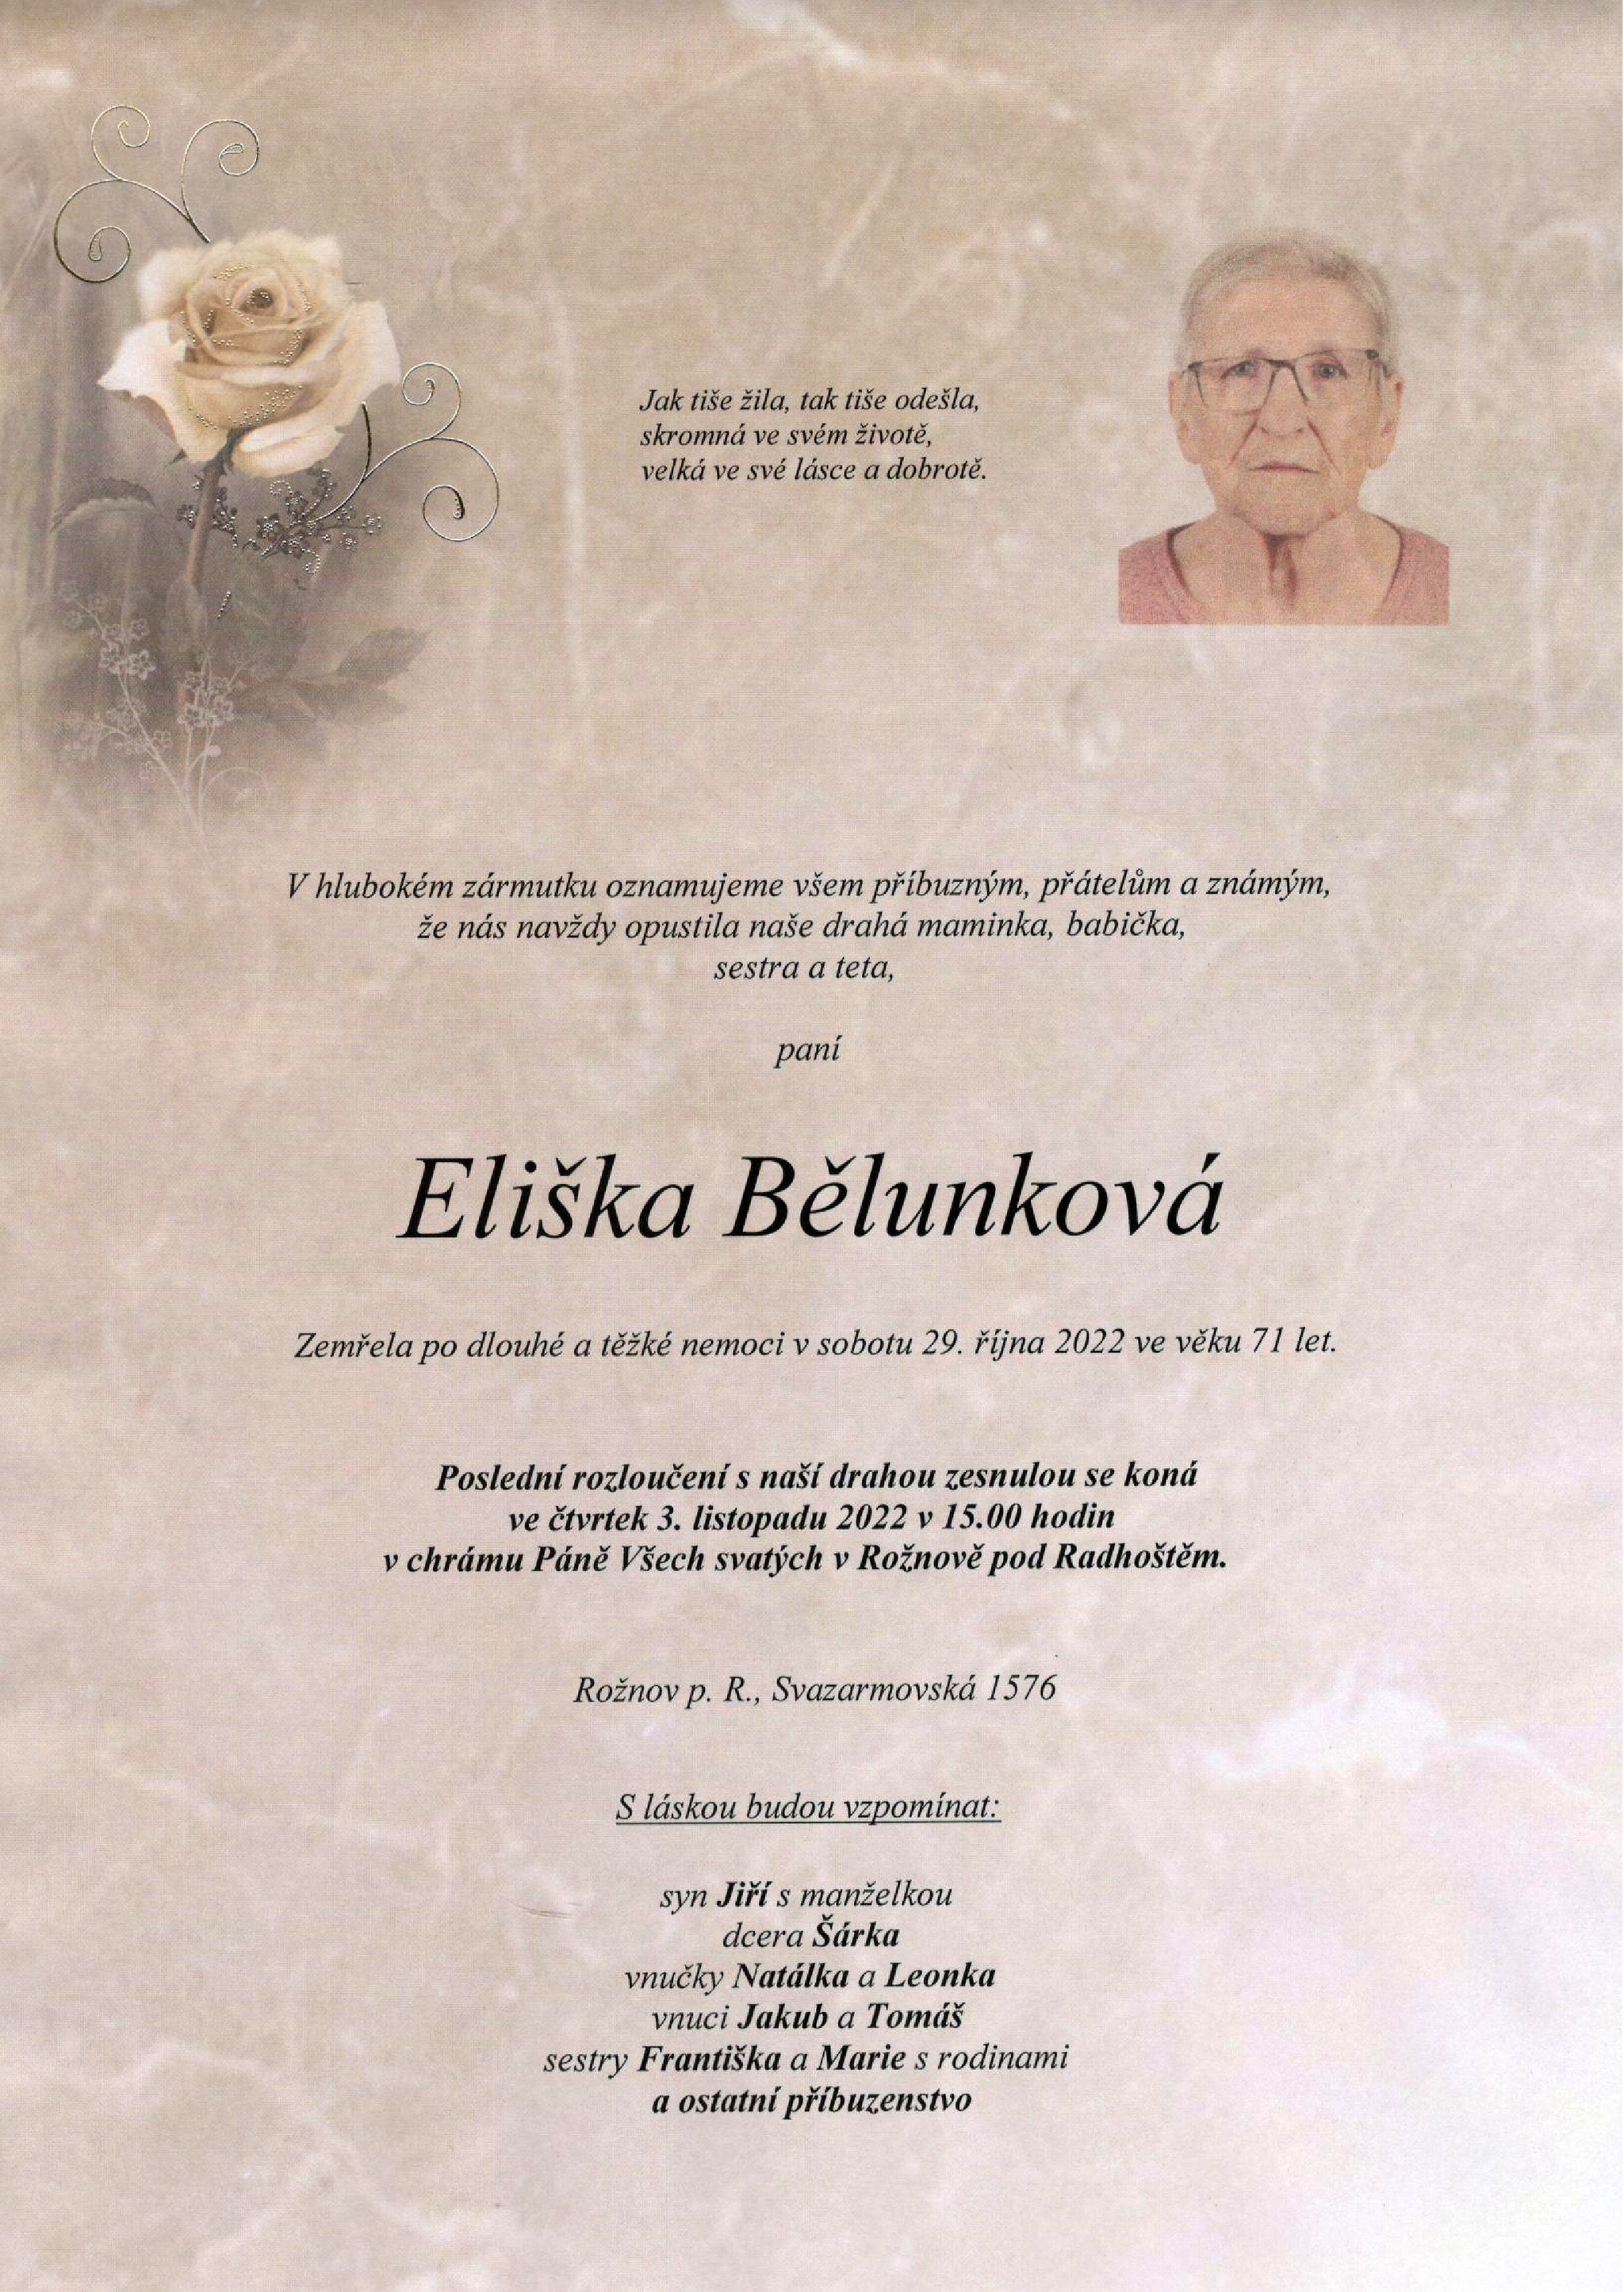 Eliška Bělunková